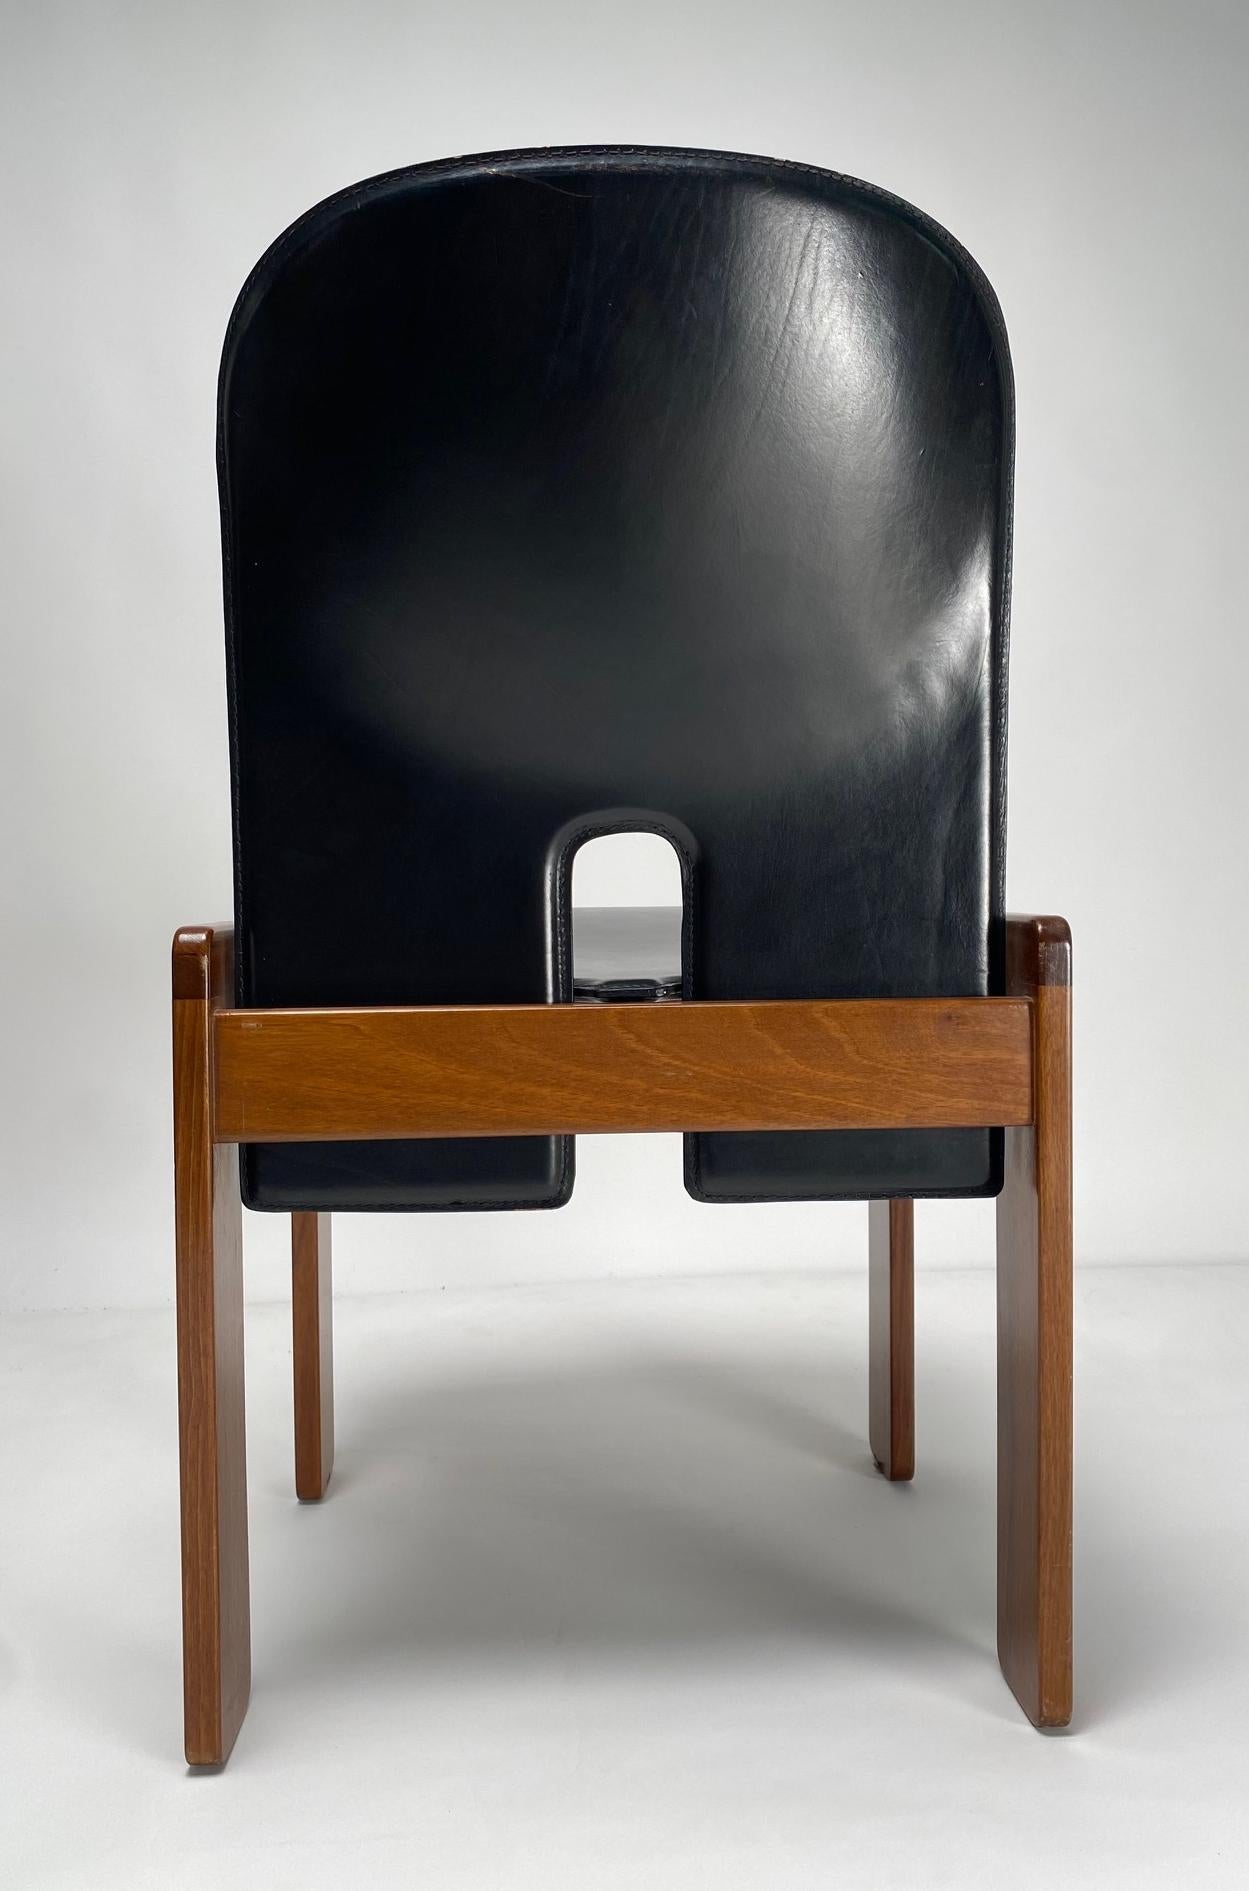 Satz von 6 Stühlen aus schwarzem Leder „121“ von Tobia Scarpa für Cassina, Italien, 1967

Der Stuhl, der inzwischen zu einer Ikone des italienischen Stils geworden ist, zeichnet sich durch die für Scarpa typische doppelte Gestellstruktur mit der